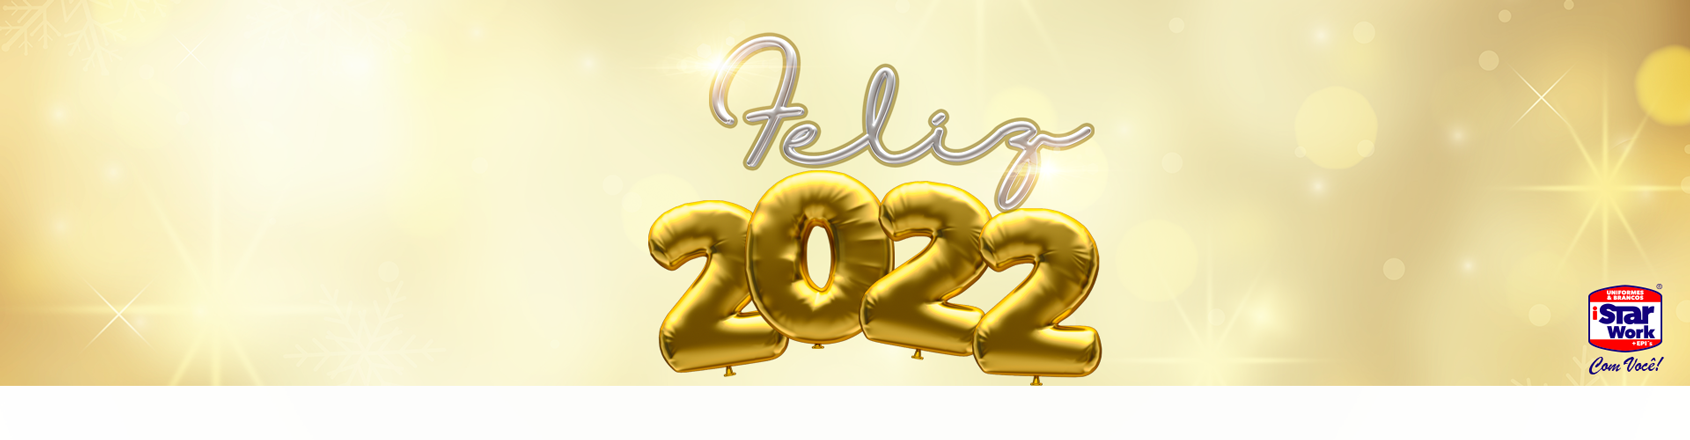 feliz 2022